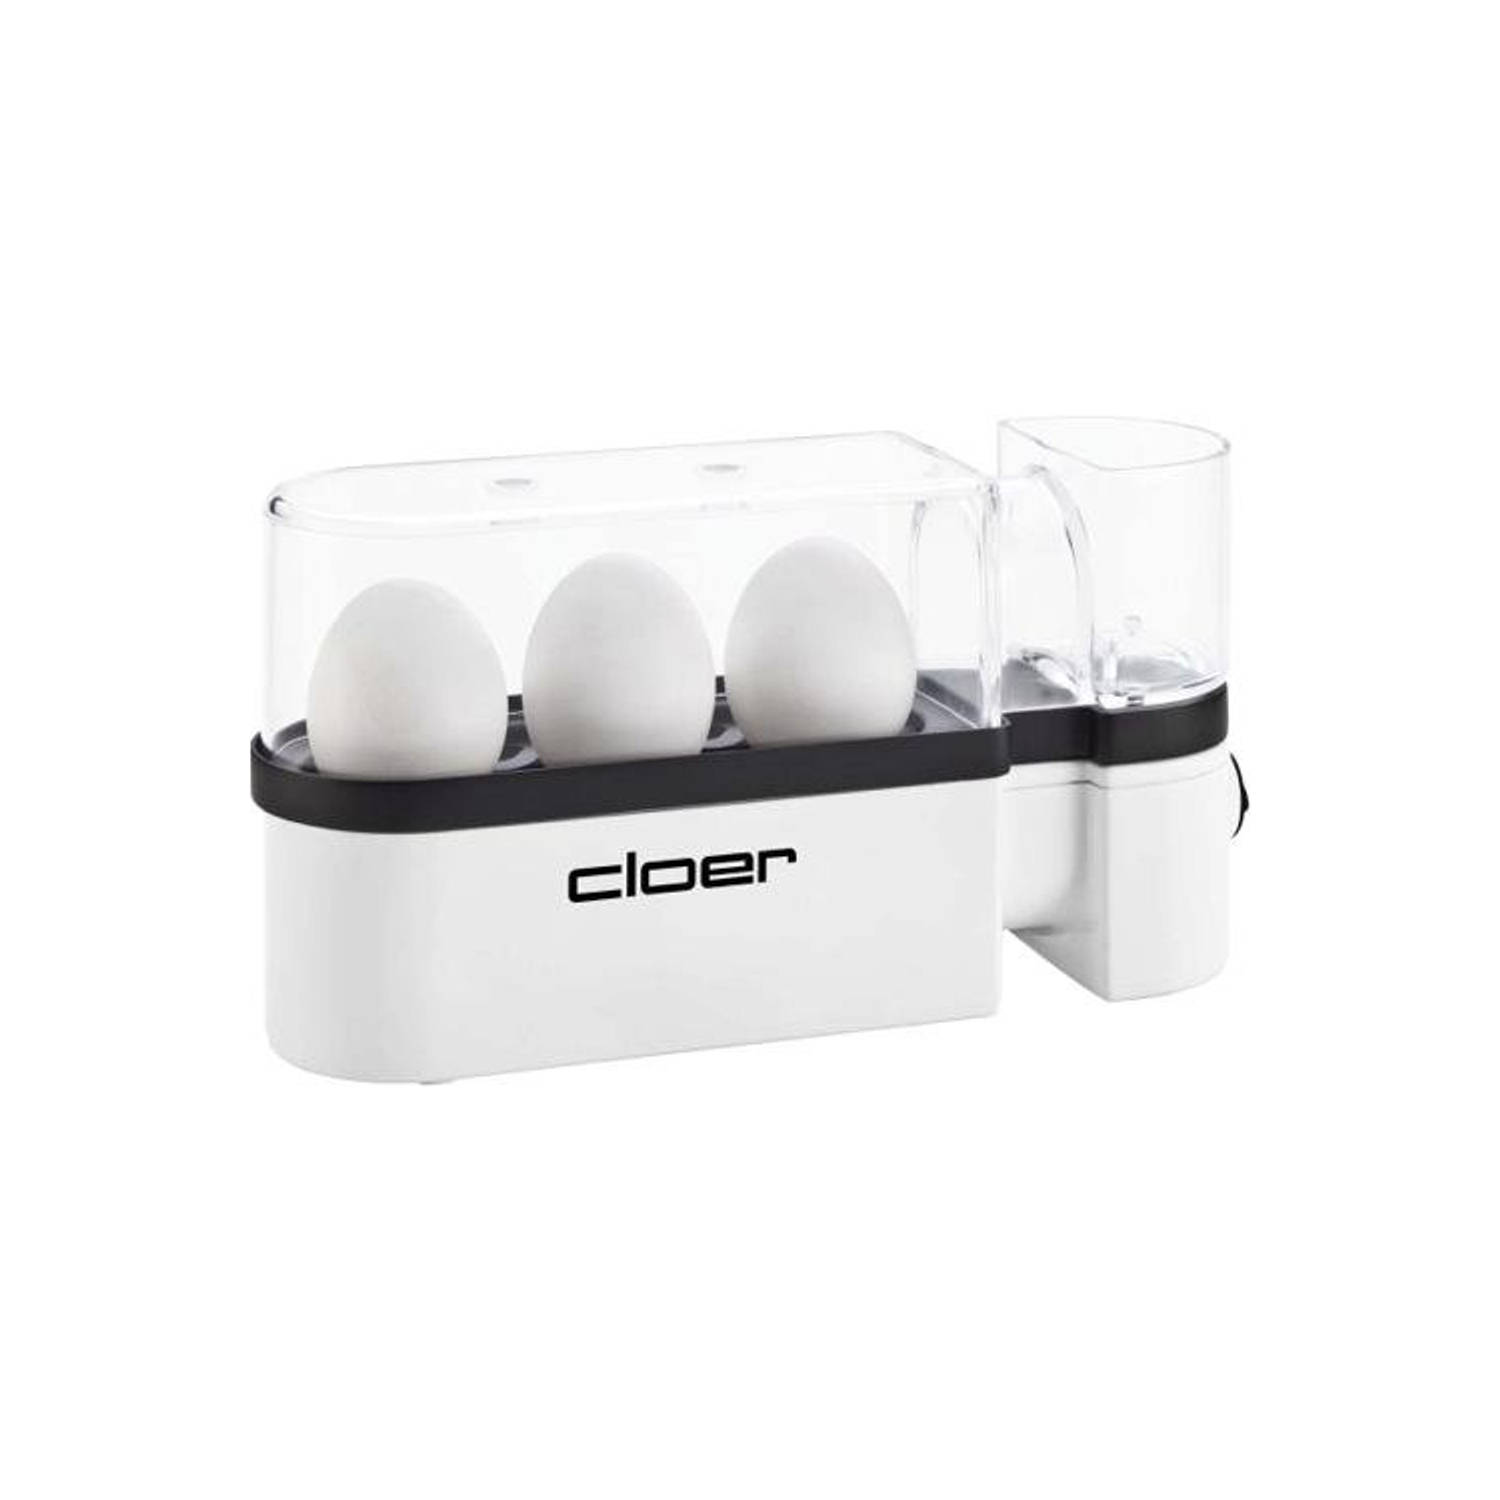 Cloer 6021 - Eierkoker